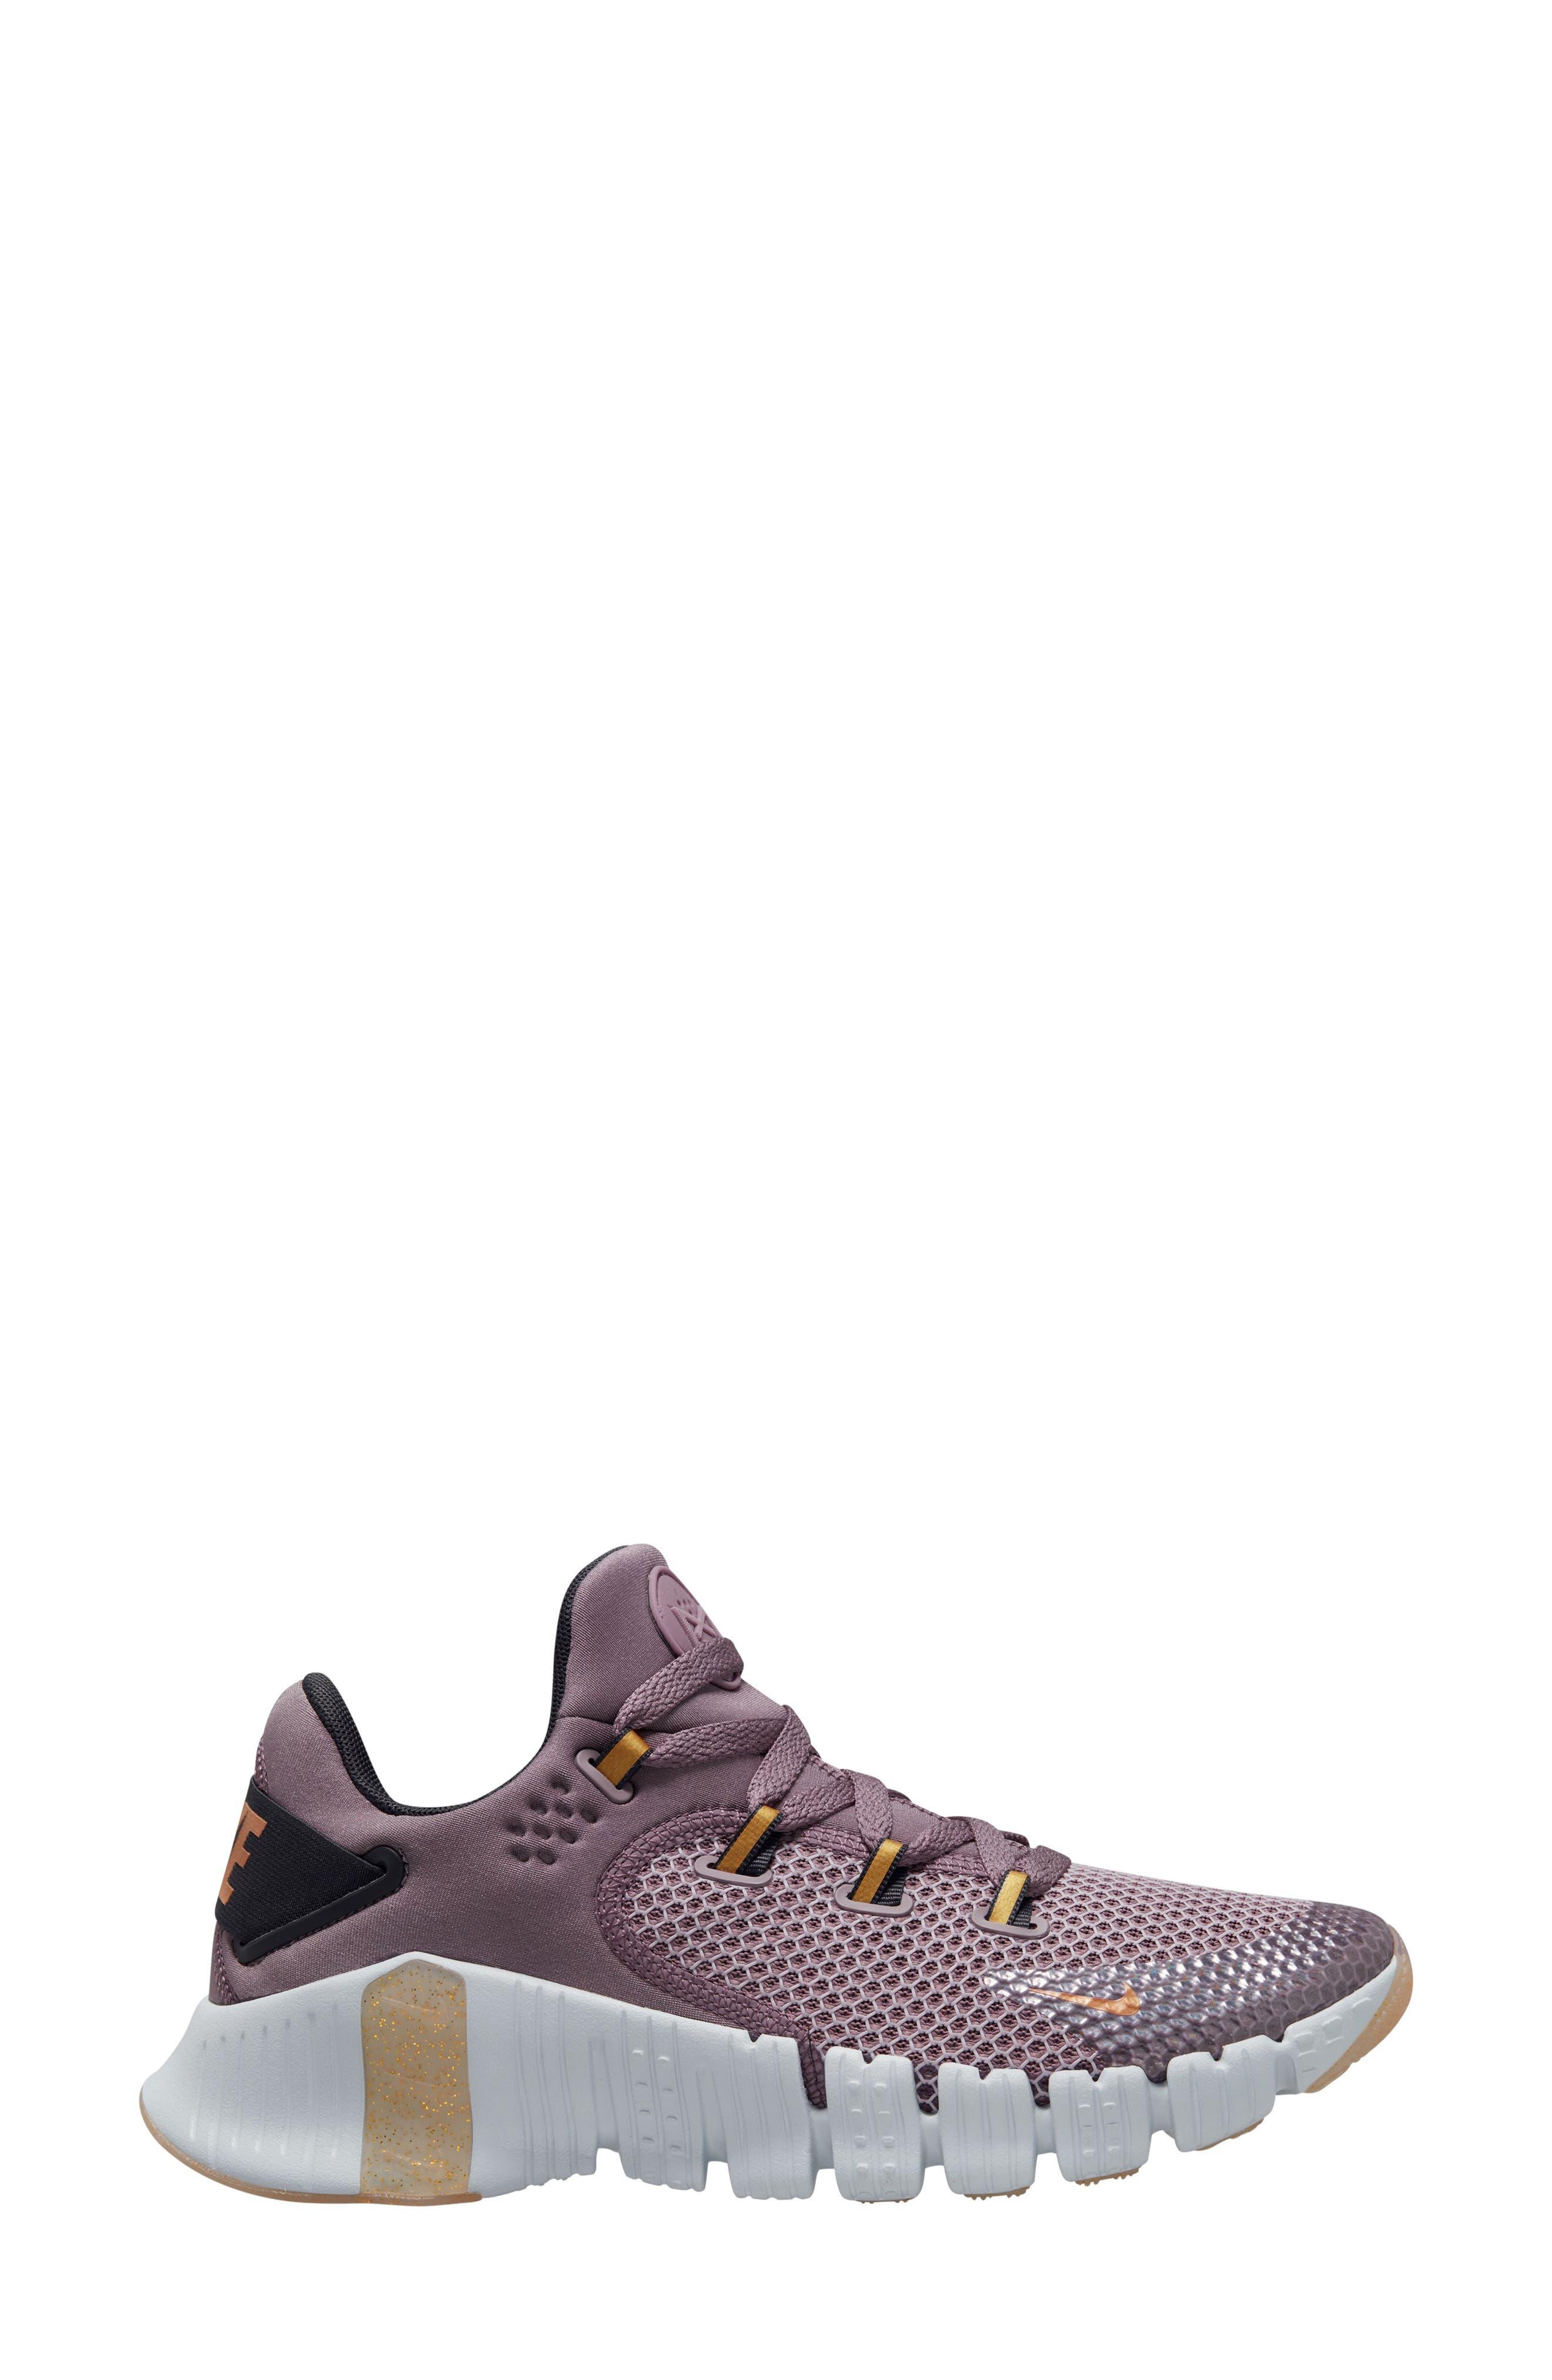 Nike Free Metcon 4 Prm Training Shoe in Purple | Lyst